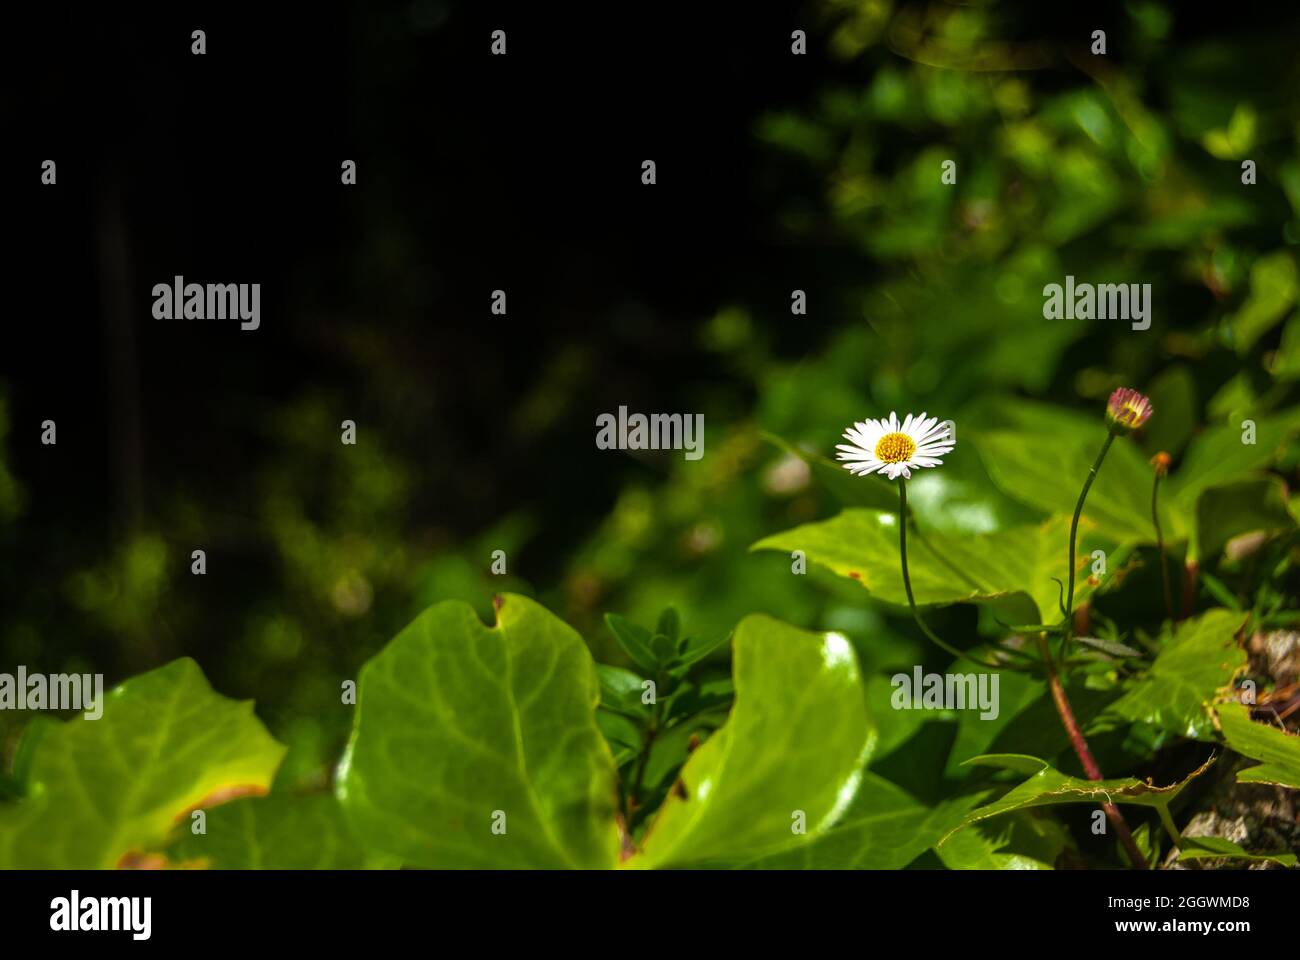 Einsame Erigeron annuus weiße Blume zwischen den grünen Blättern - jährliche Fleabane, Daisy Fleabane Stockfoto